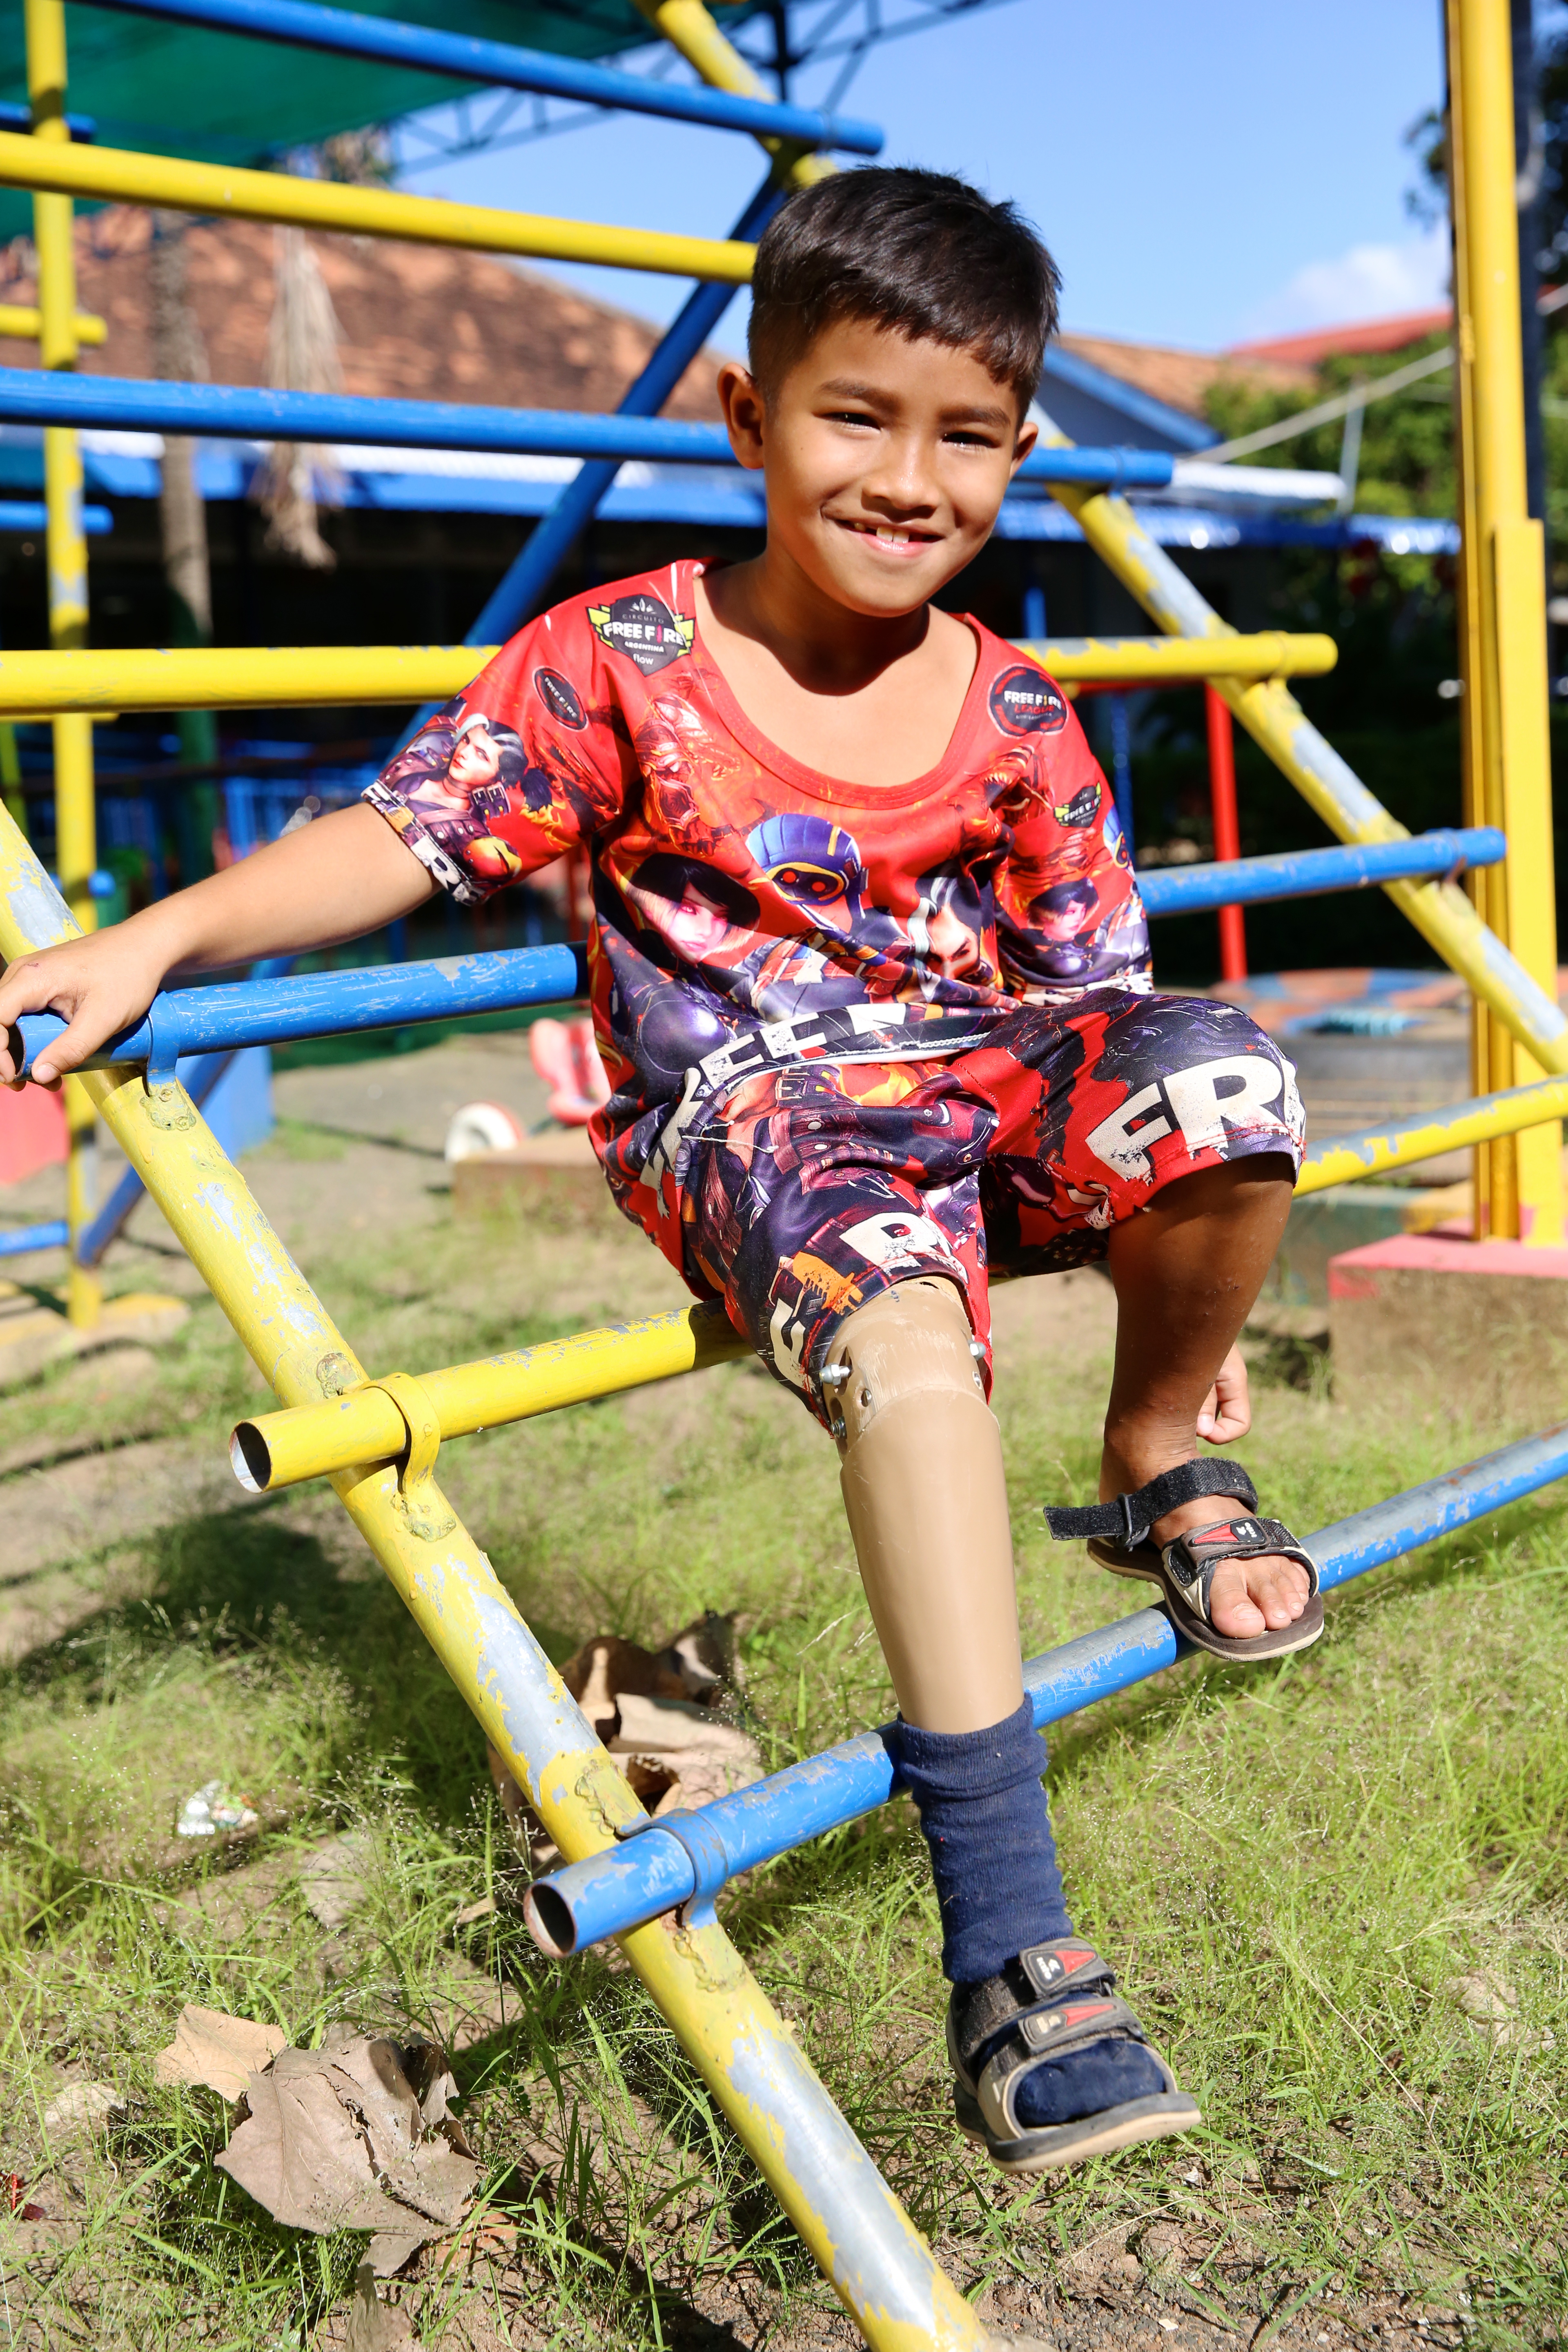 Kuch wird Reha-Zentrum von Handicap International in Kampong Cham betreut, wo er bereits zwei Prothesen erhalten hat. Er führt nun wieder ein normales Leben und geht zur Schule.